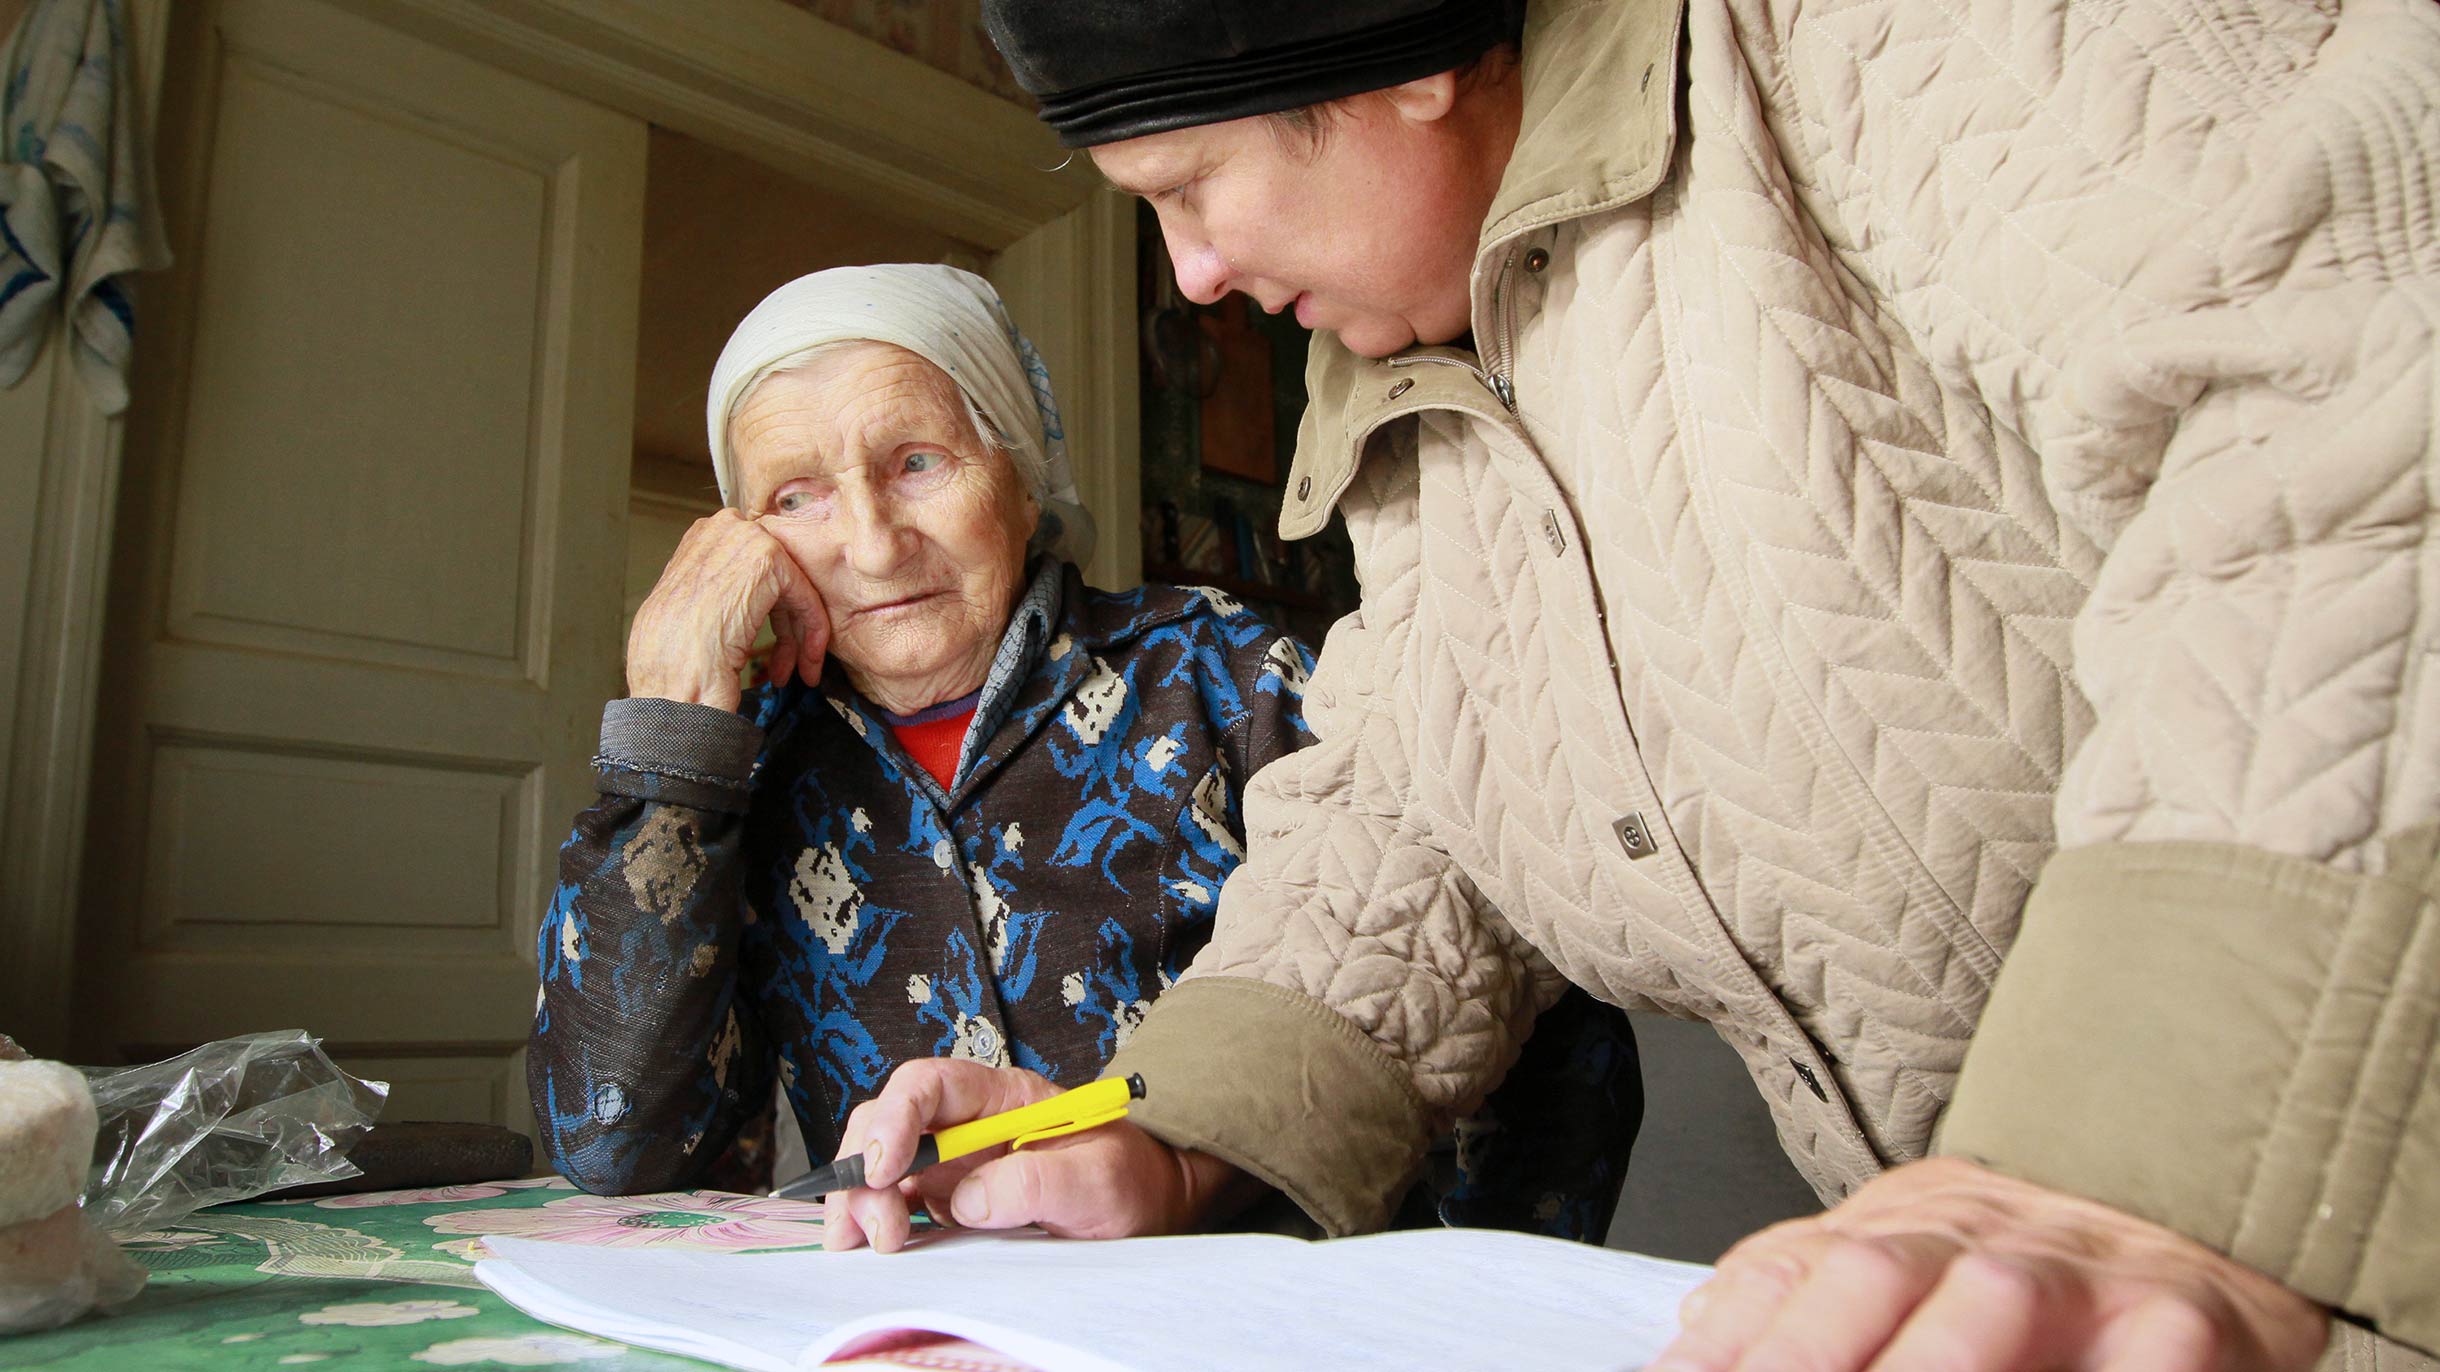 Новости по пенсионному возрасту в россии